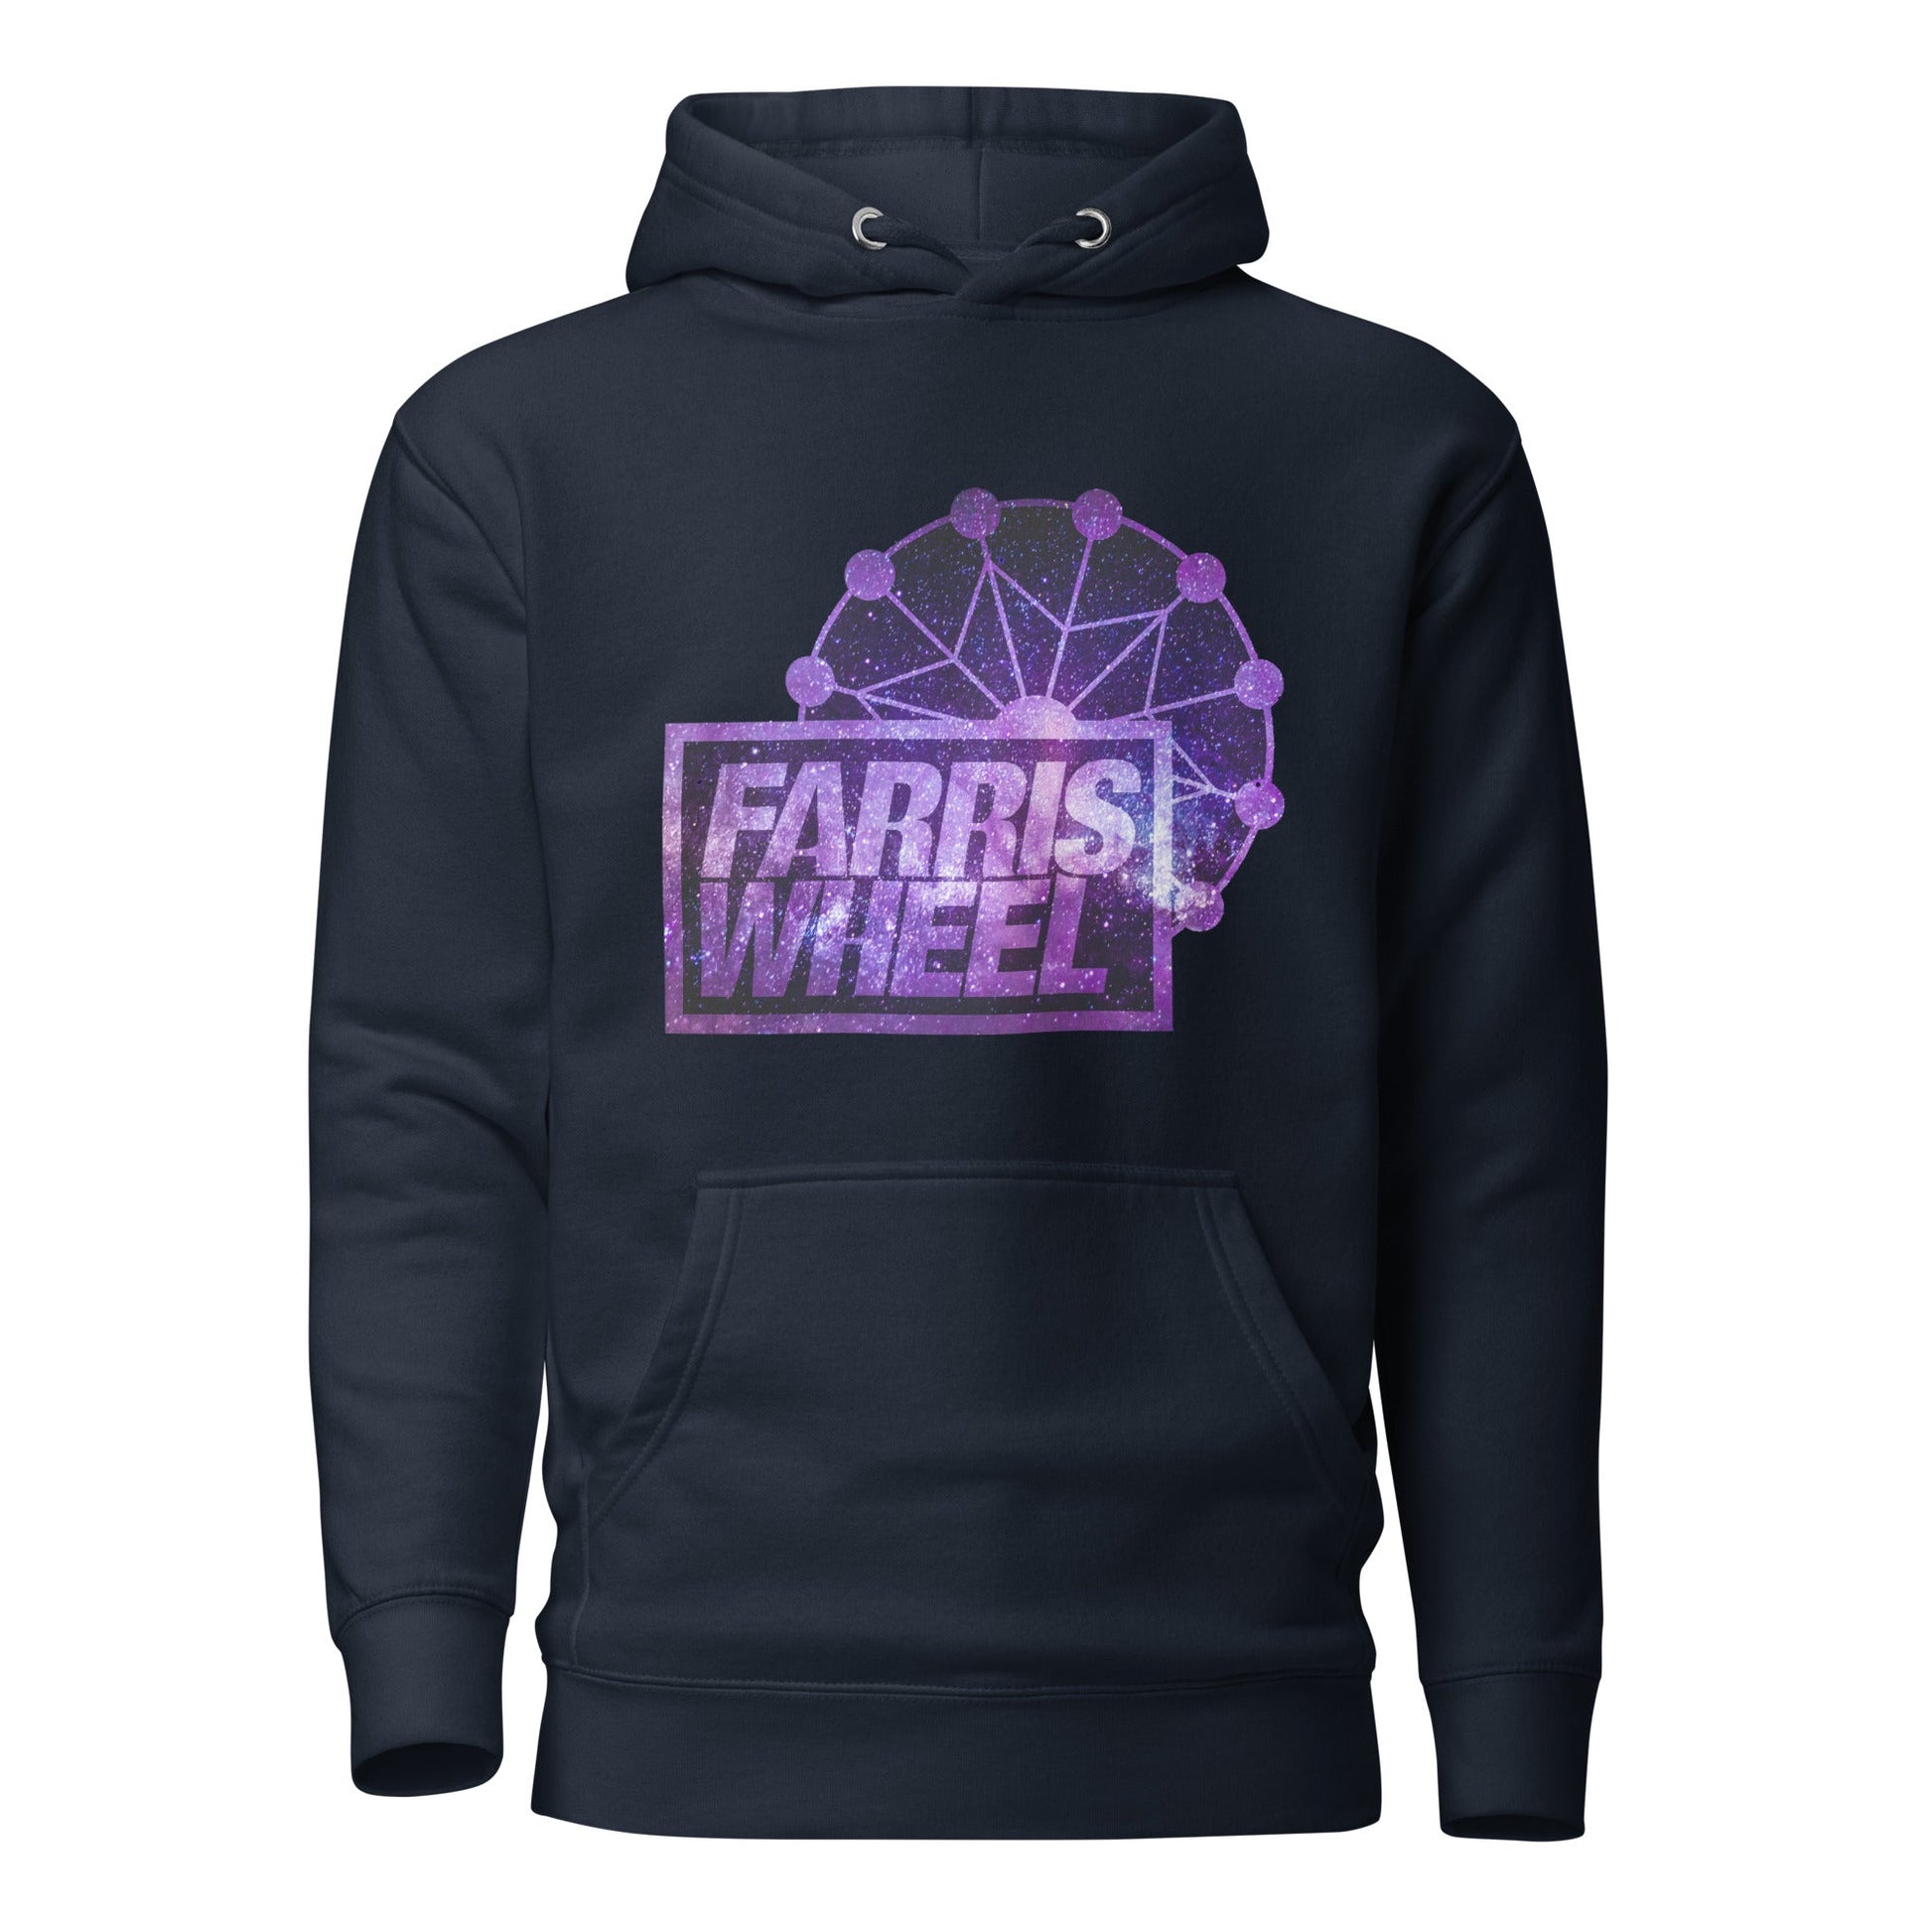 Farris Wheel Star Wars Unisex Hoodie - BeExtra! Apparel & More